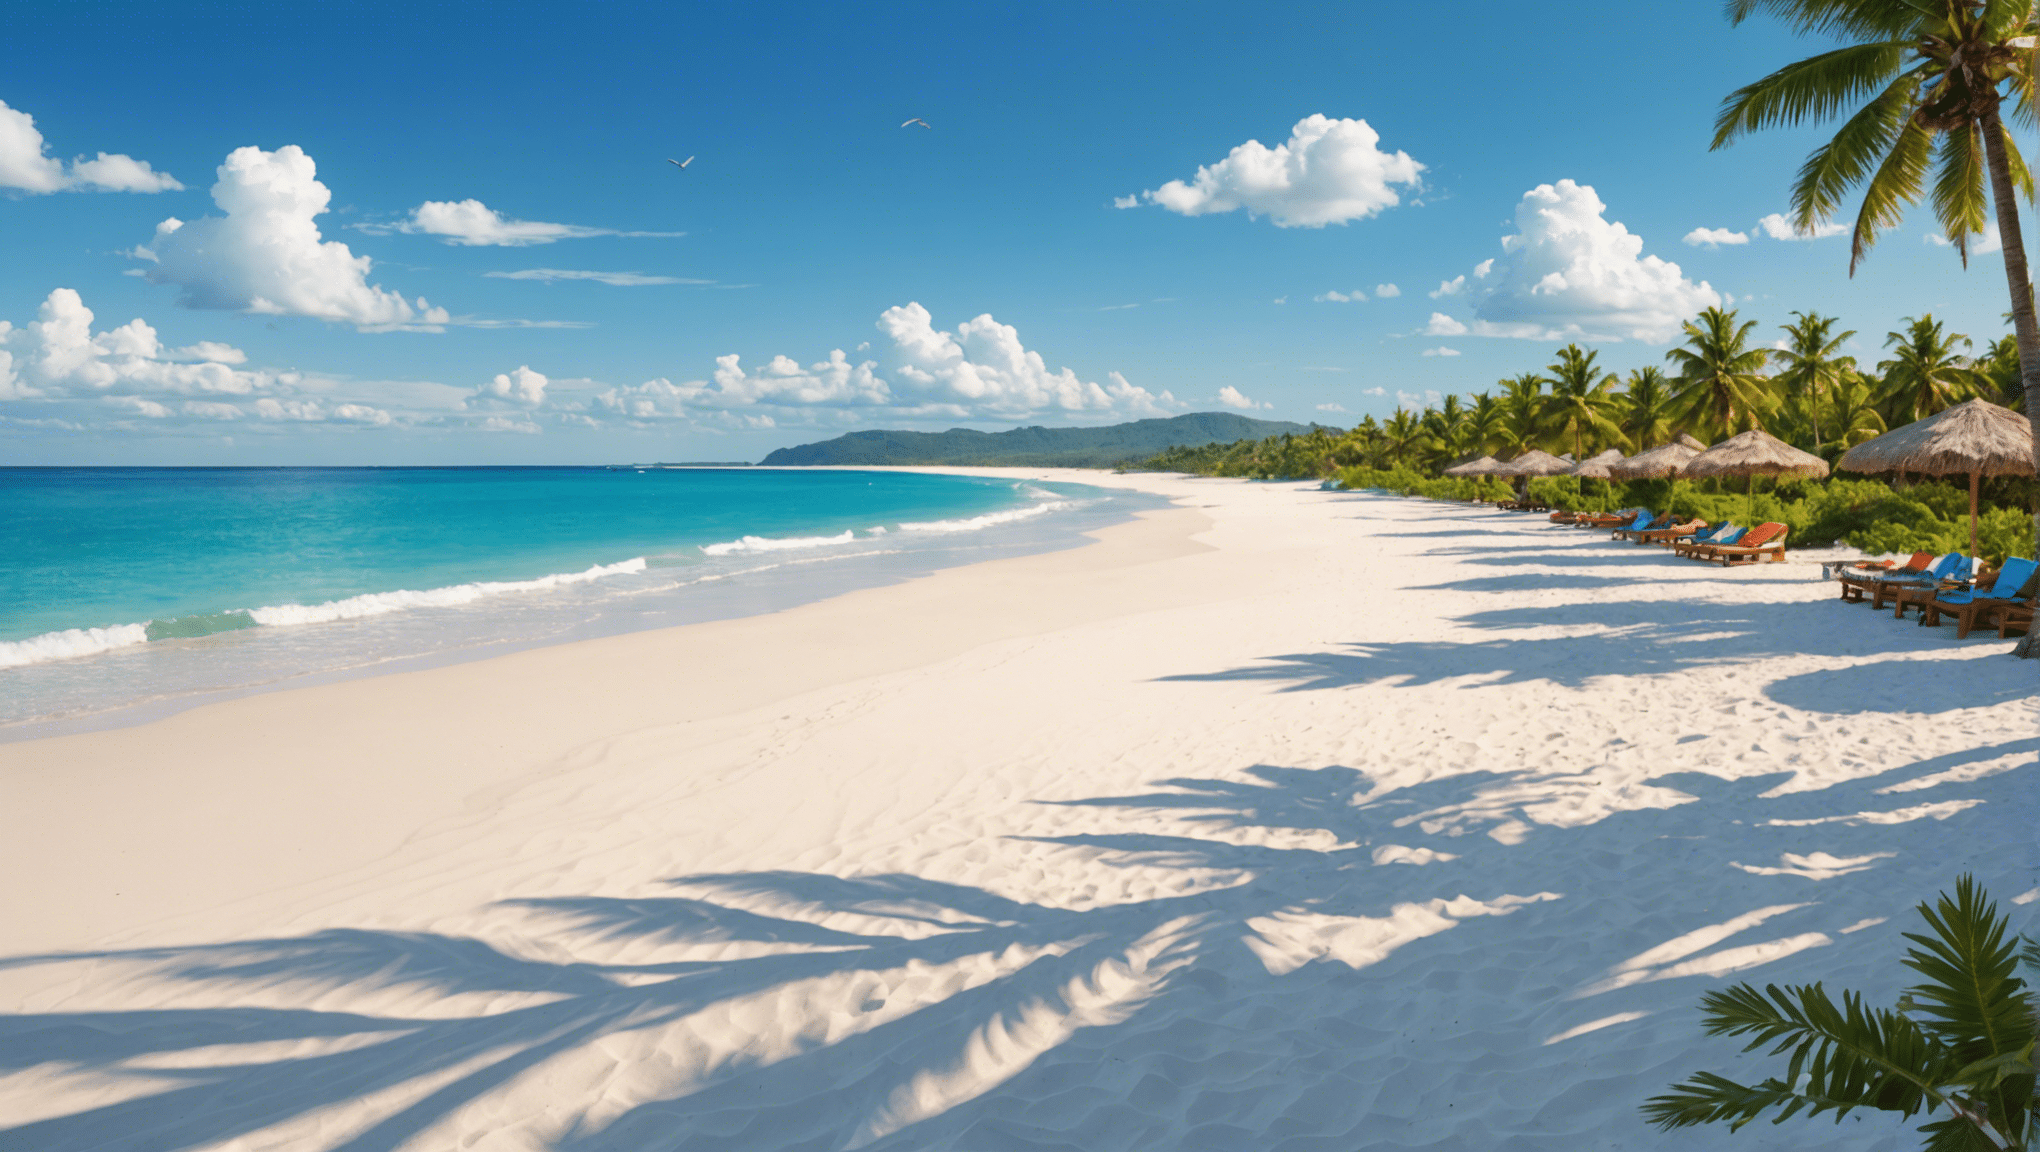 اكتشف أجمل الشواطئ ذات الرمال البيضاء حول العالم وتمتع بجمالها وهدوءها.